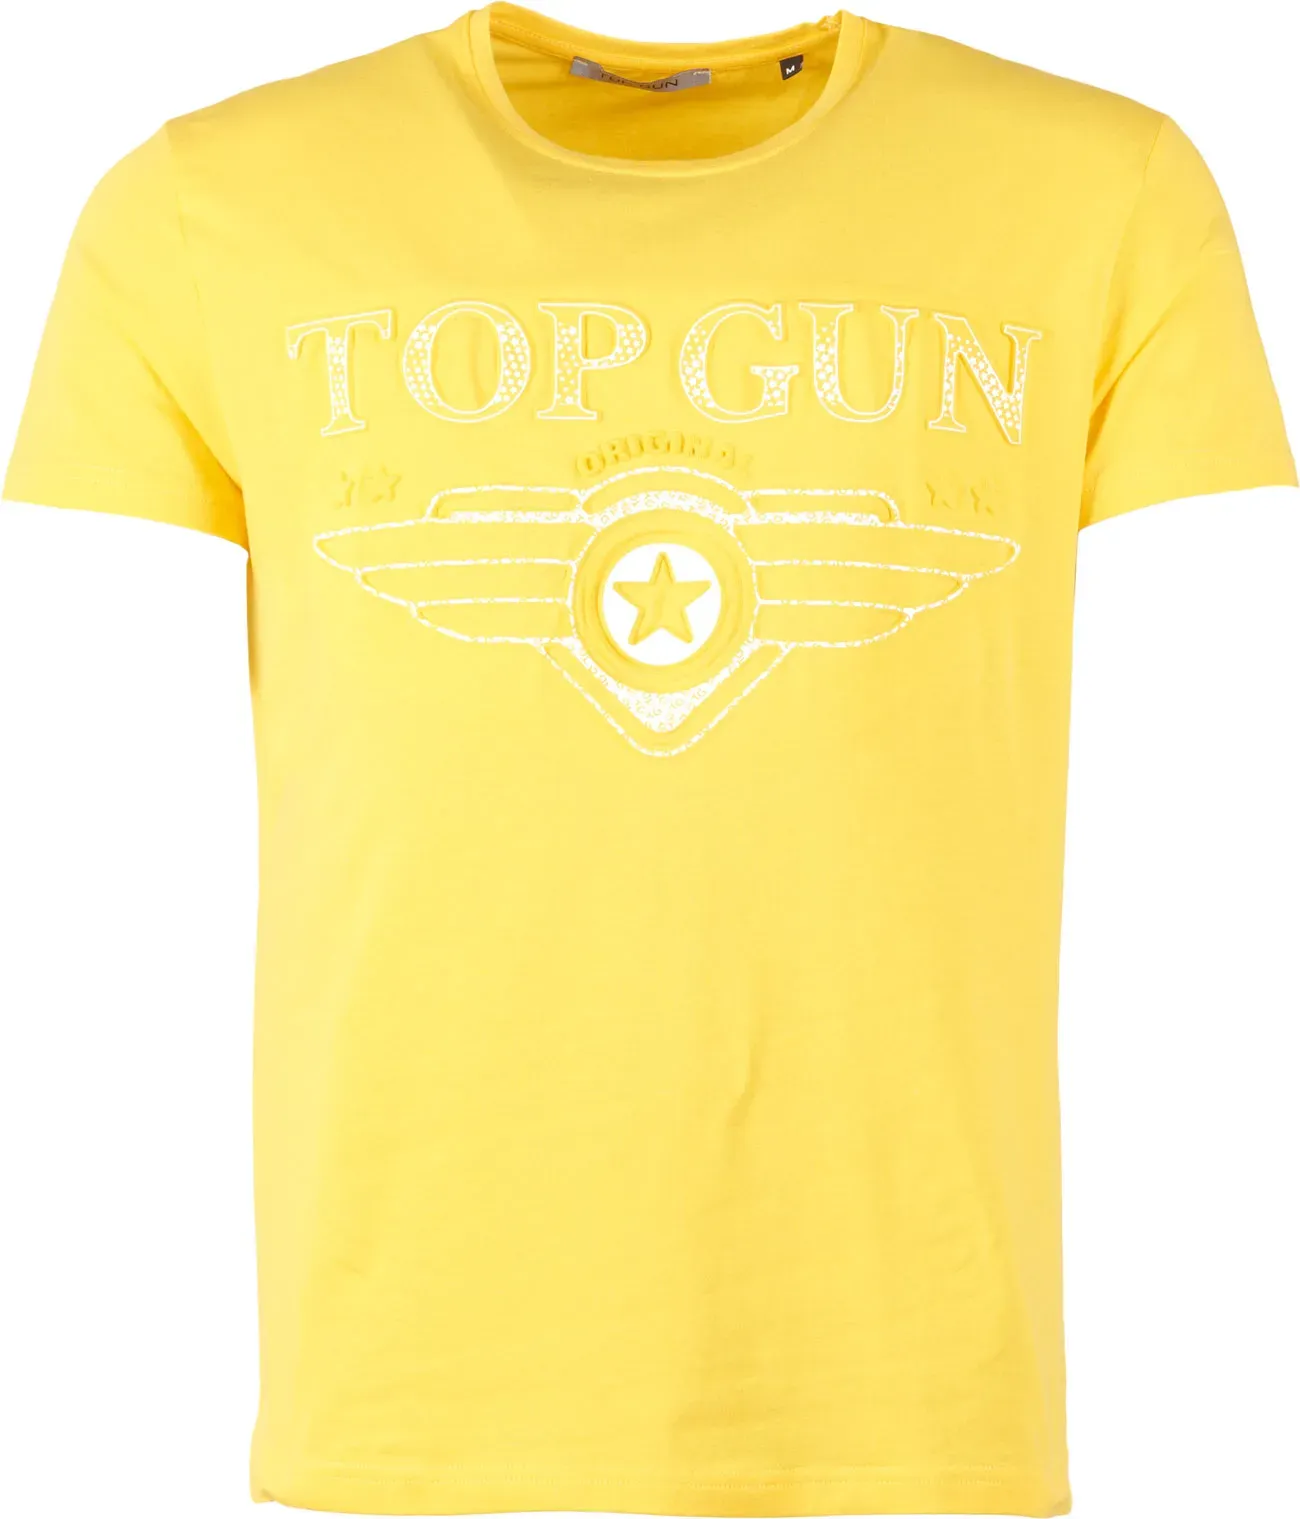 Top Gun Bling, t-shirt - Jaune - XXL